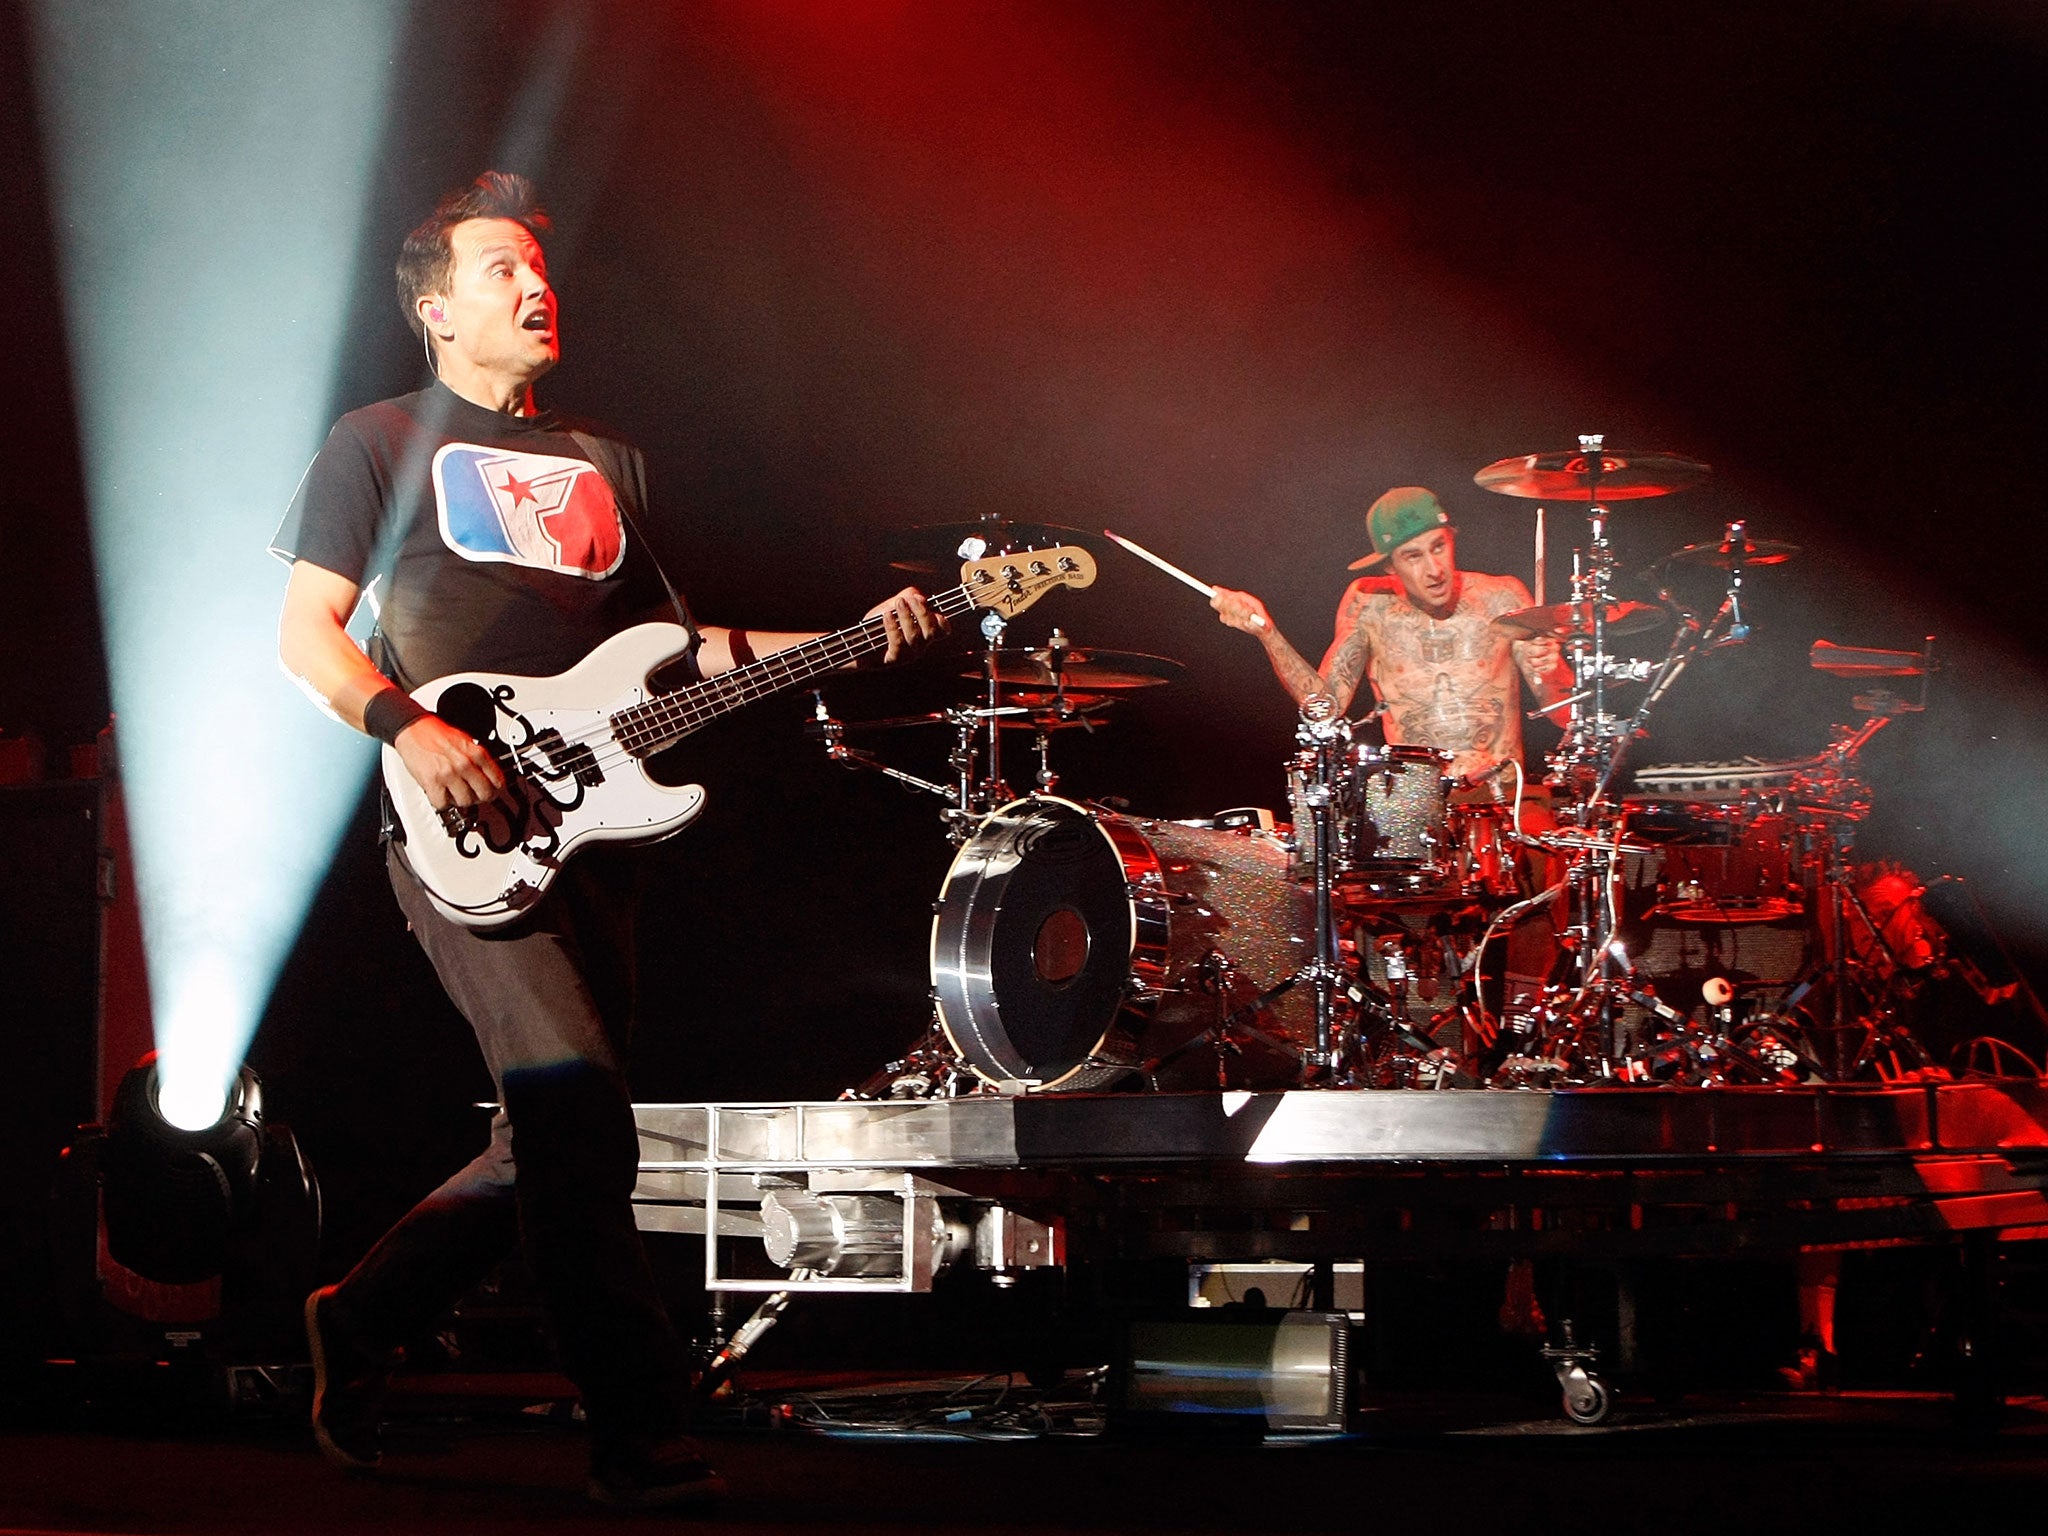 Blink-182 singer/bassist Mark Hoppus (L) and drummer Travis Barker perform onstage